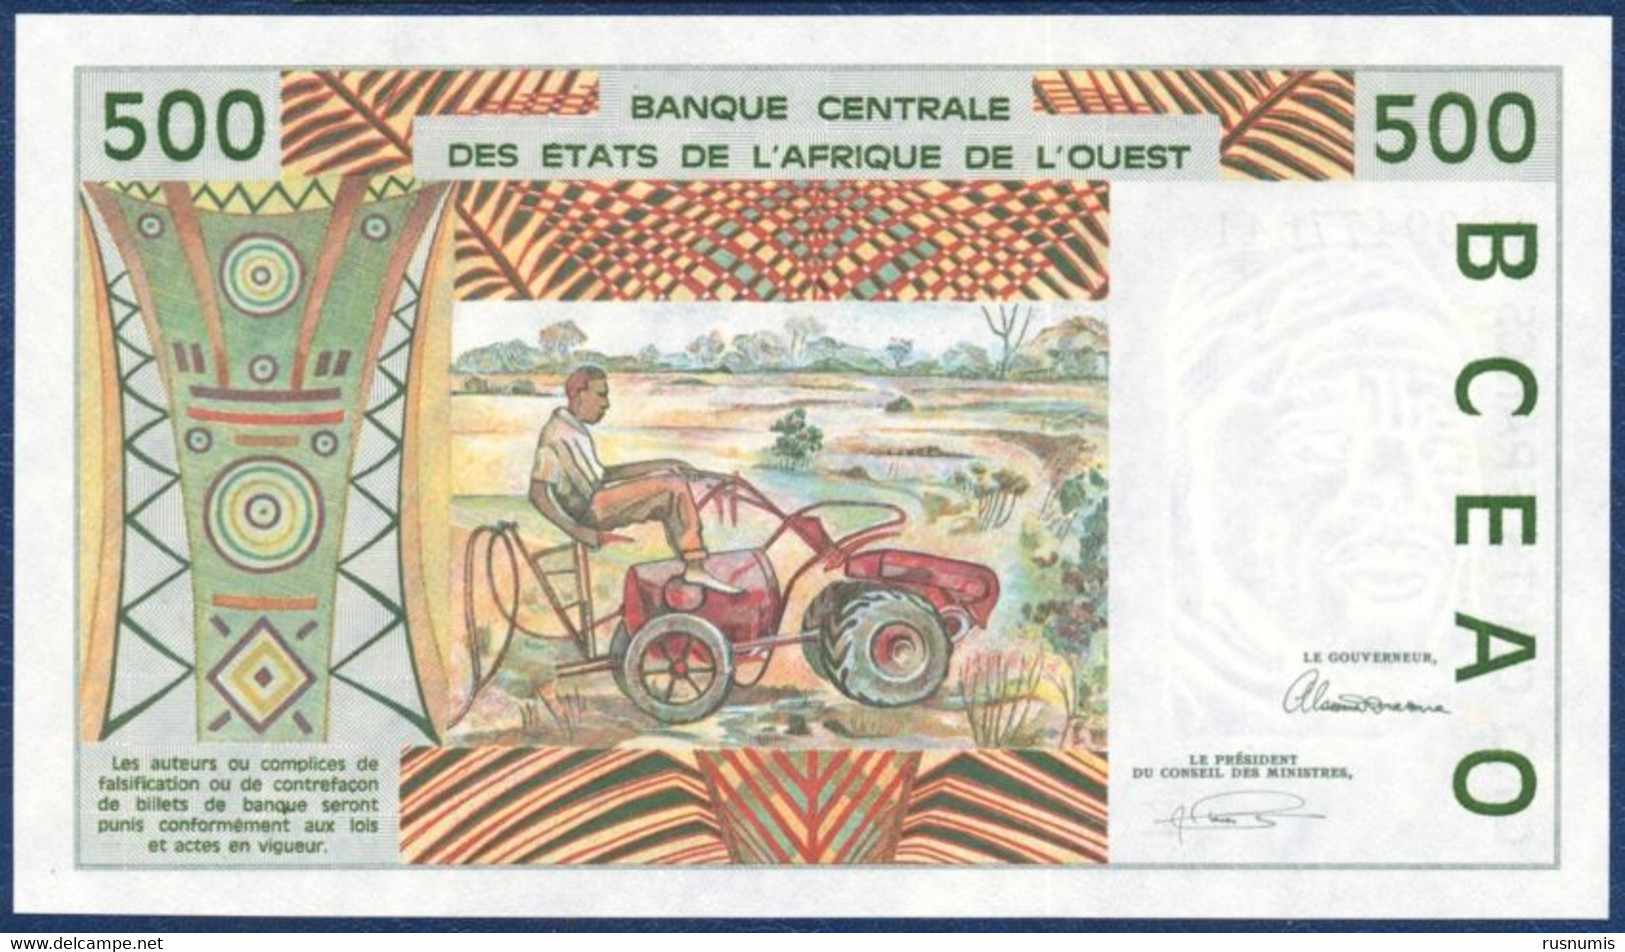 WEST AFRICAN STATES Afrique De L'Ouest - SENEGAL SENEGAL 500 FRANCS P-710Kc Hydro Dam, Man - Garden Tractor 1993 UNC - Sénégal